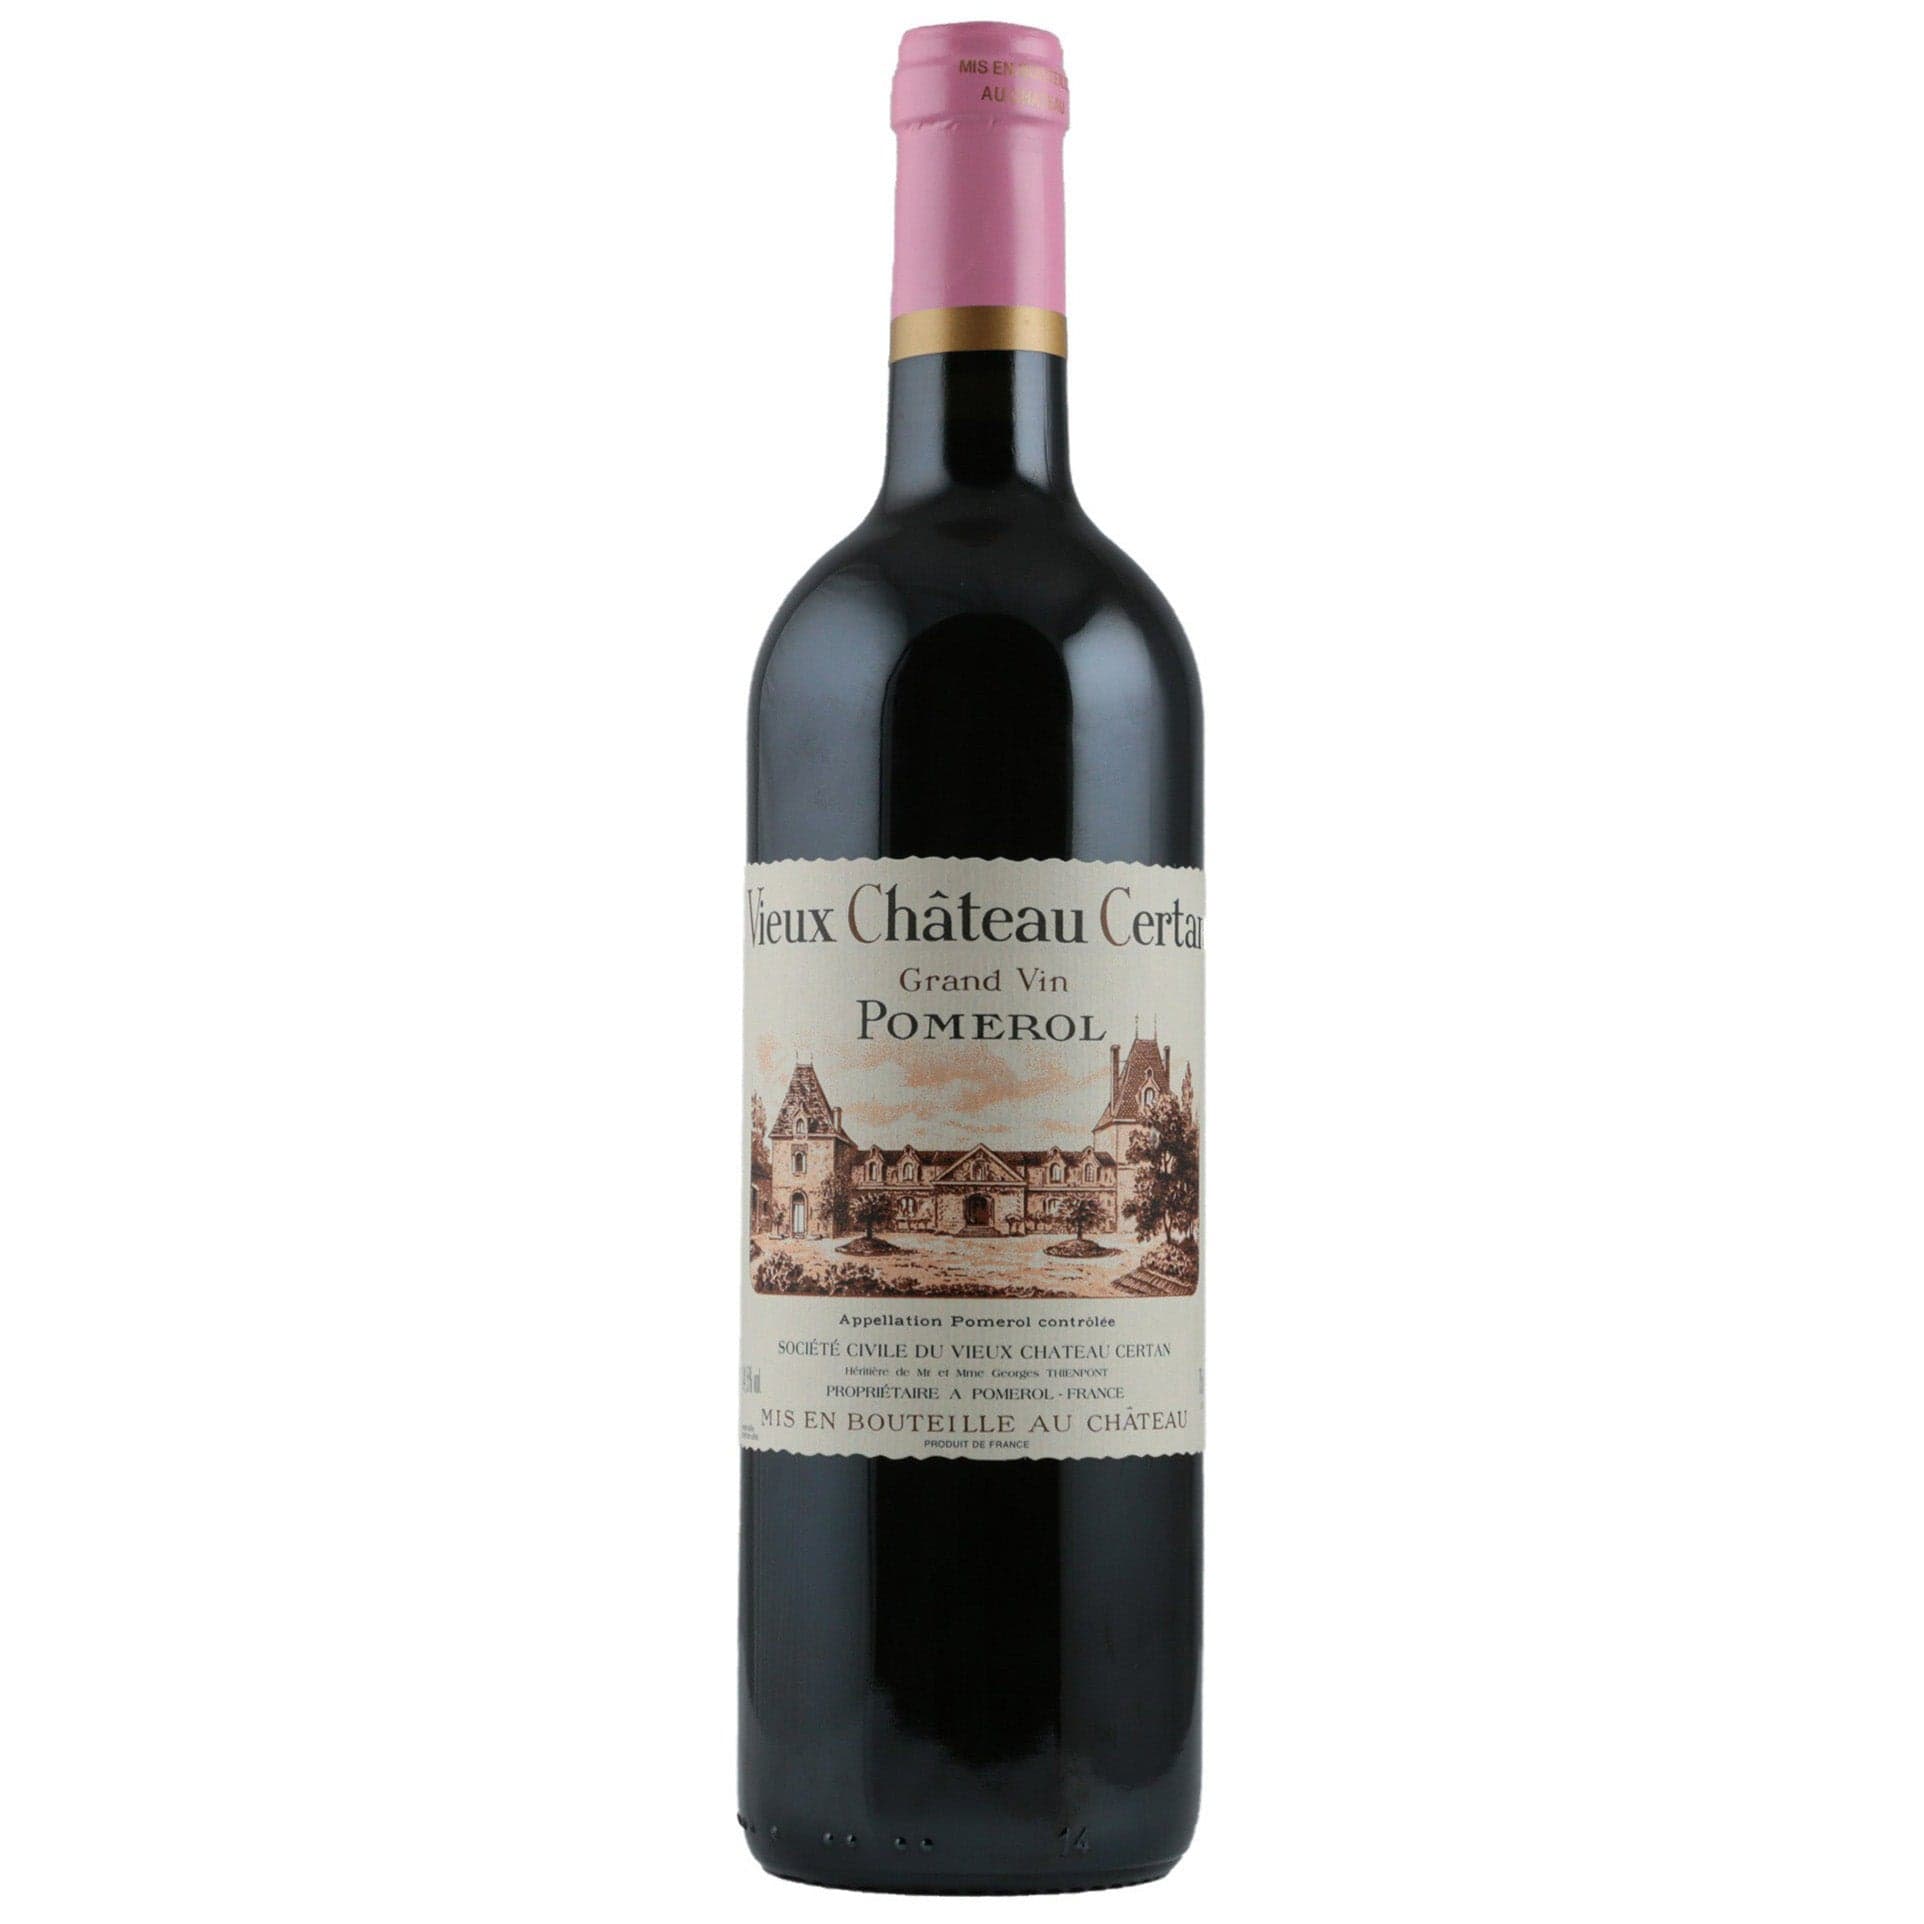 Single bottle of Red wine Vieux Chateau Certan, Vieux Chateau Certan, Pomerol, 1998 85% Merlot,10% Cabernet Sauvignon & 5% Cabernet Franc